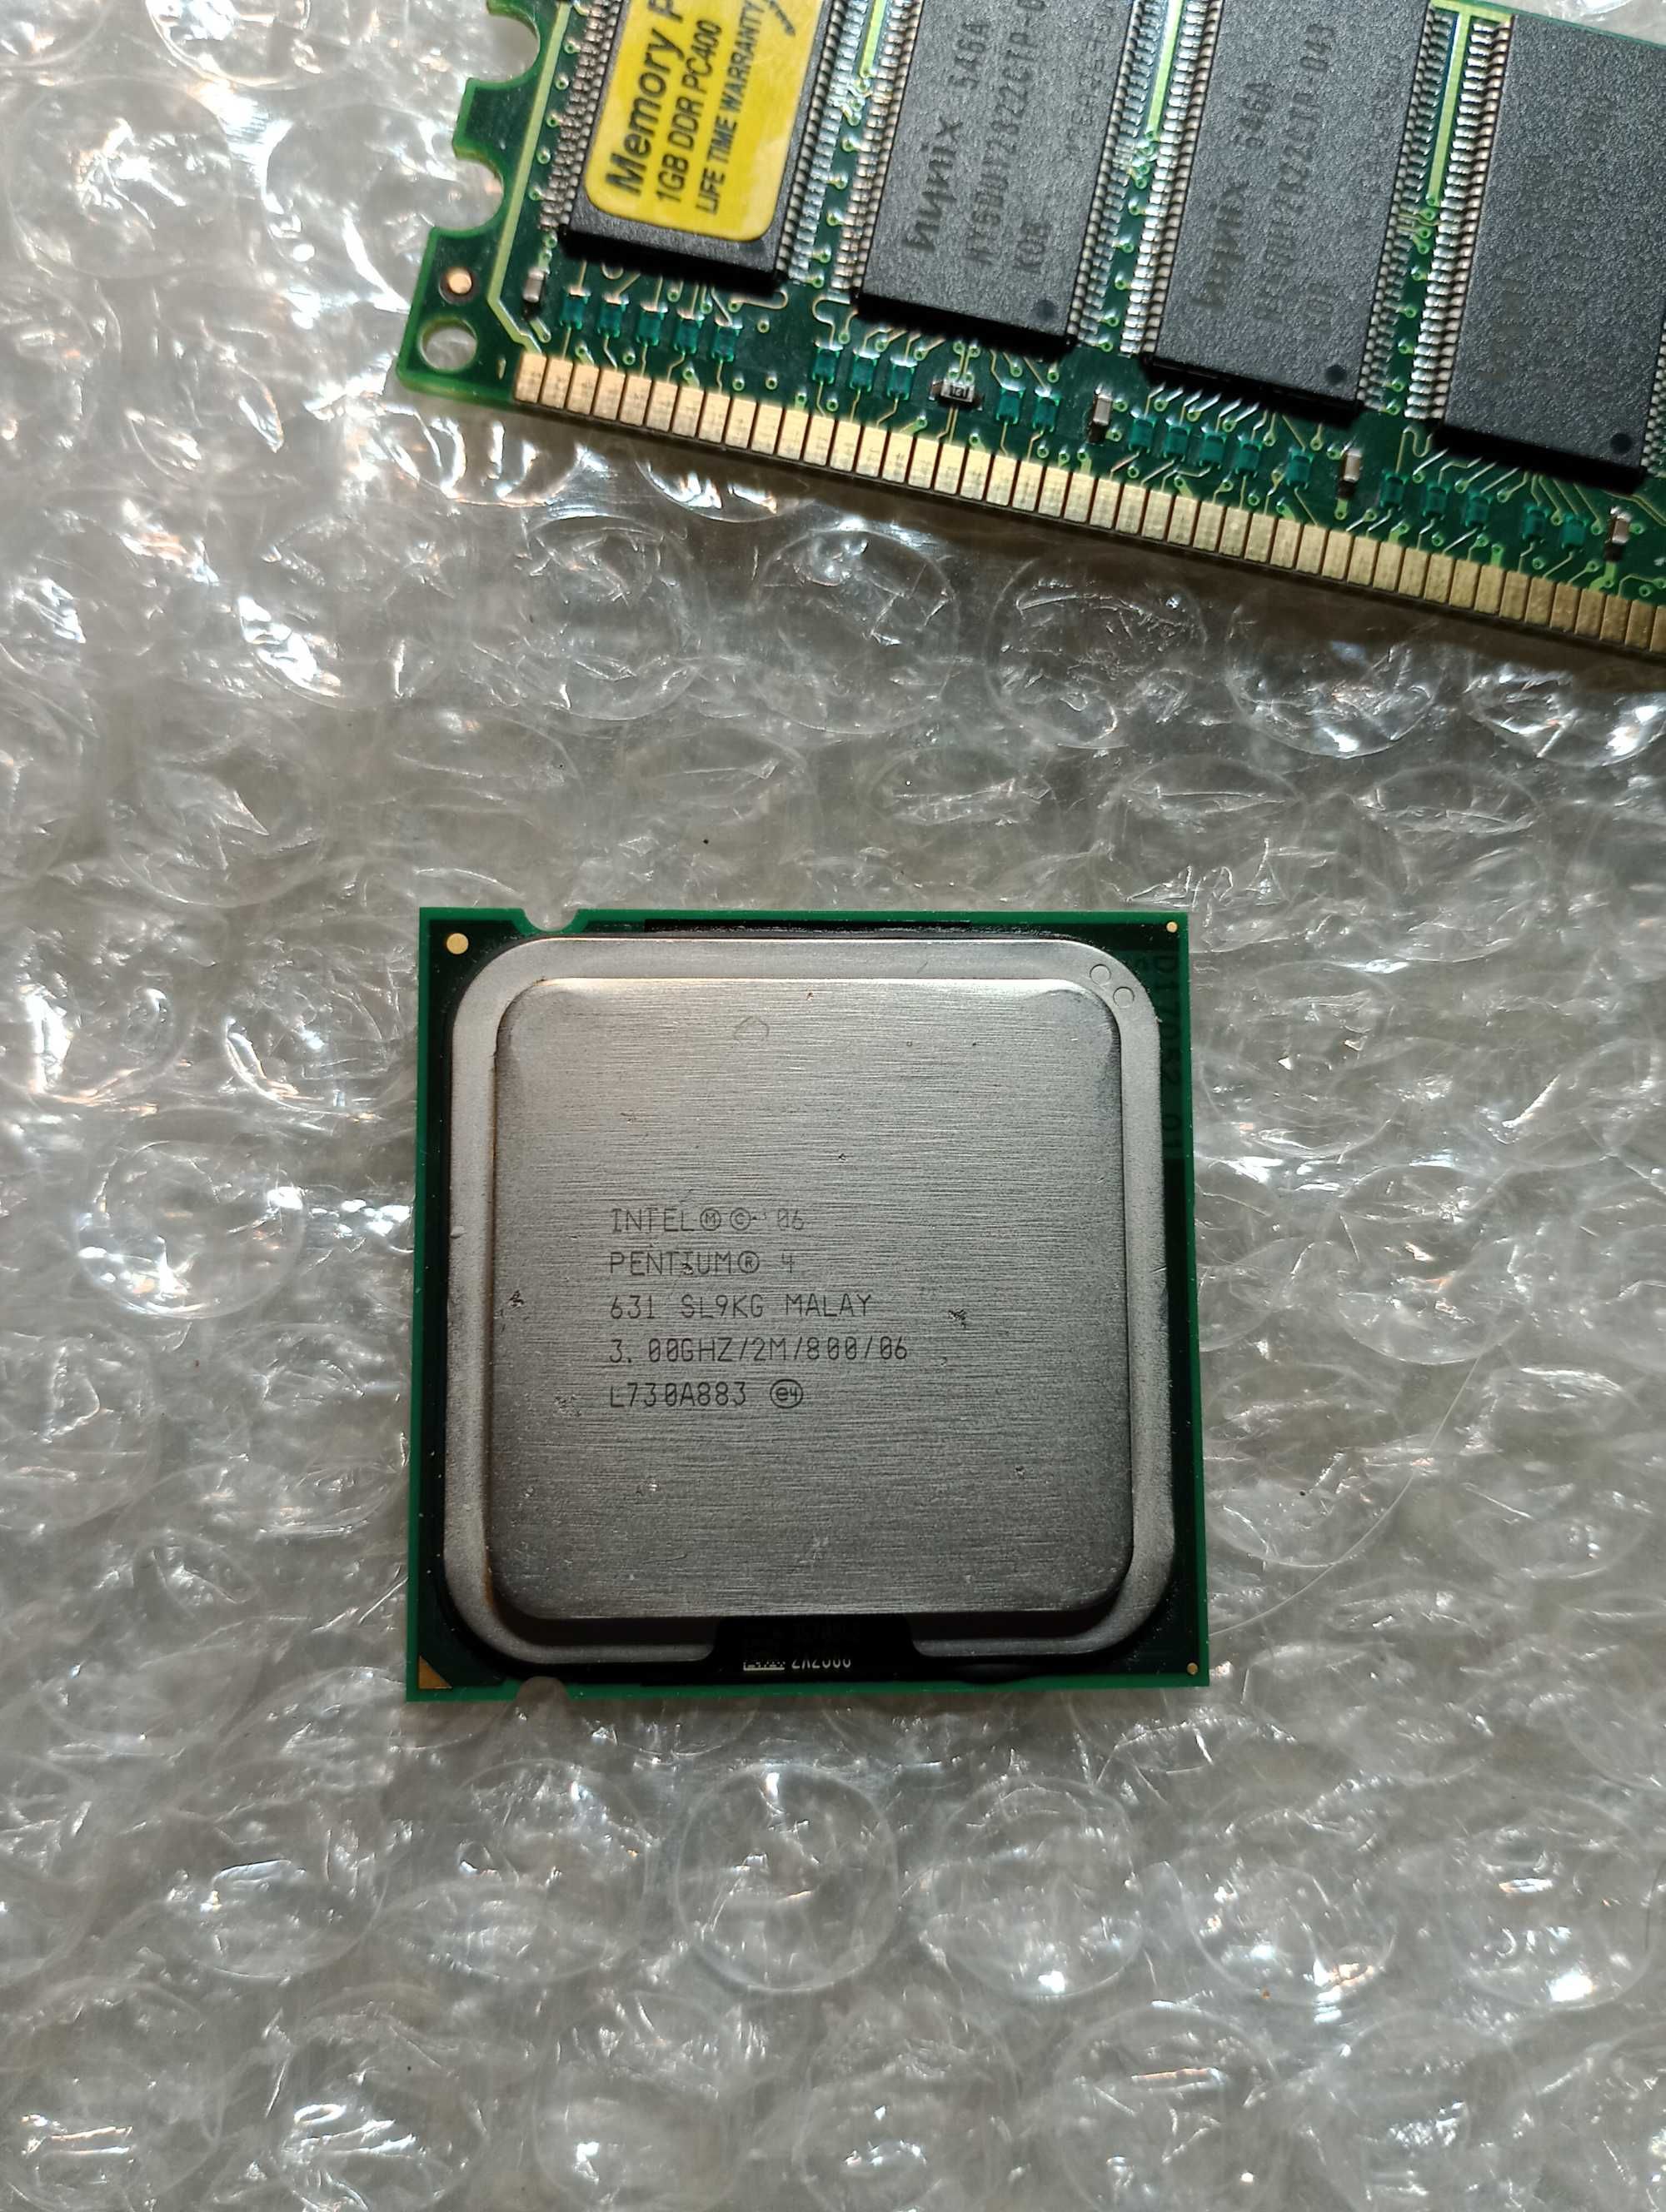 Оперативная память DDR1 1gb процессор Pentium 4 631